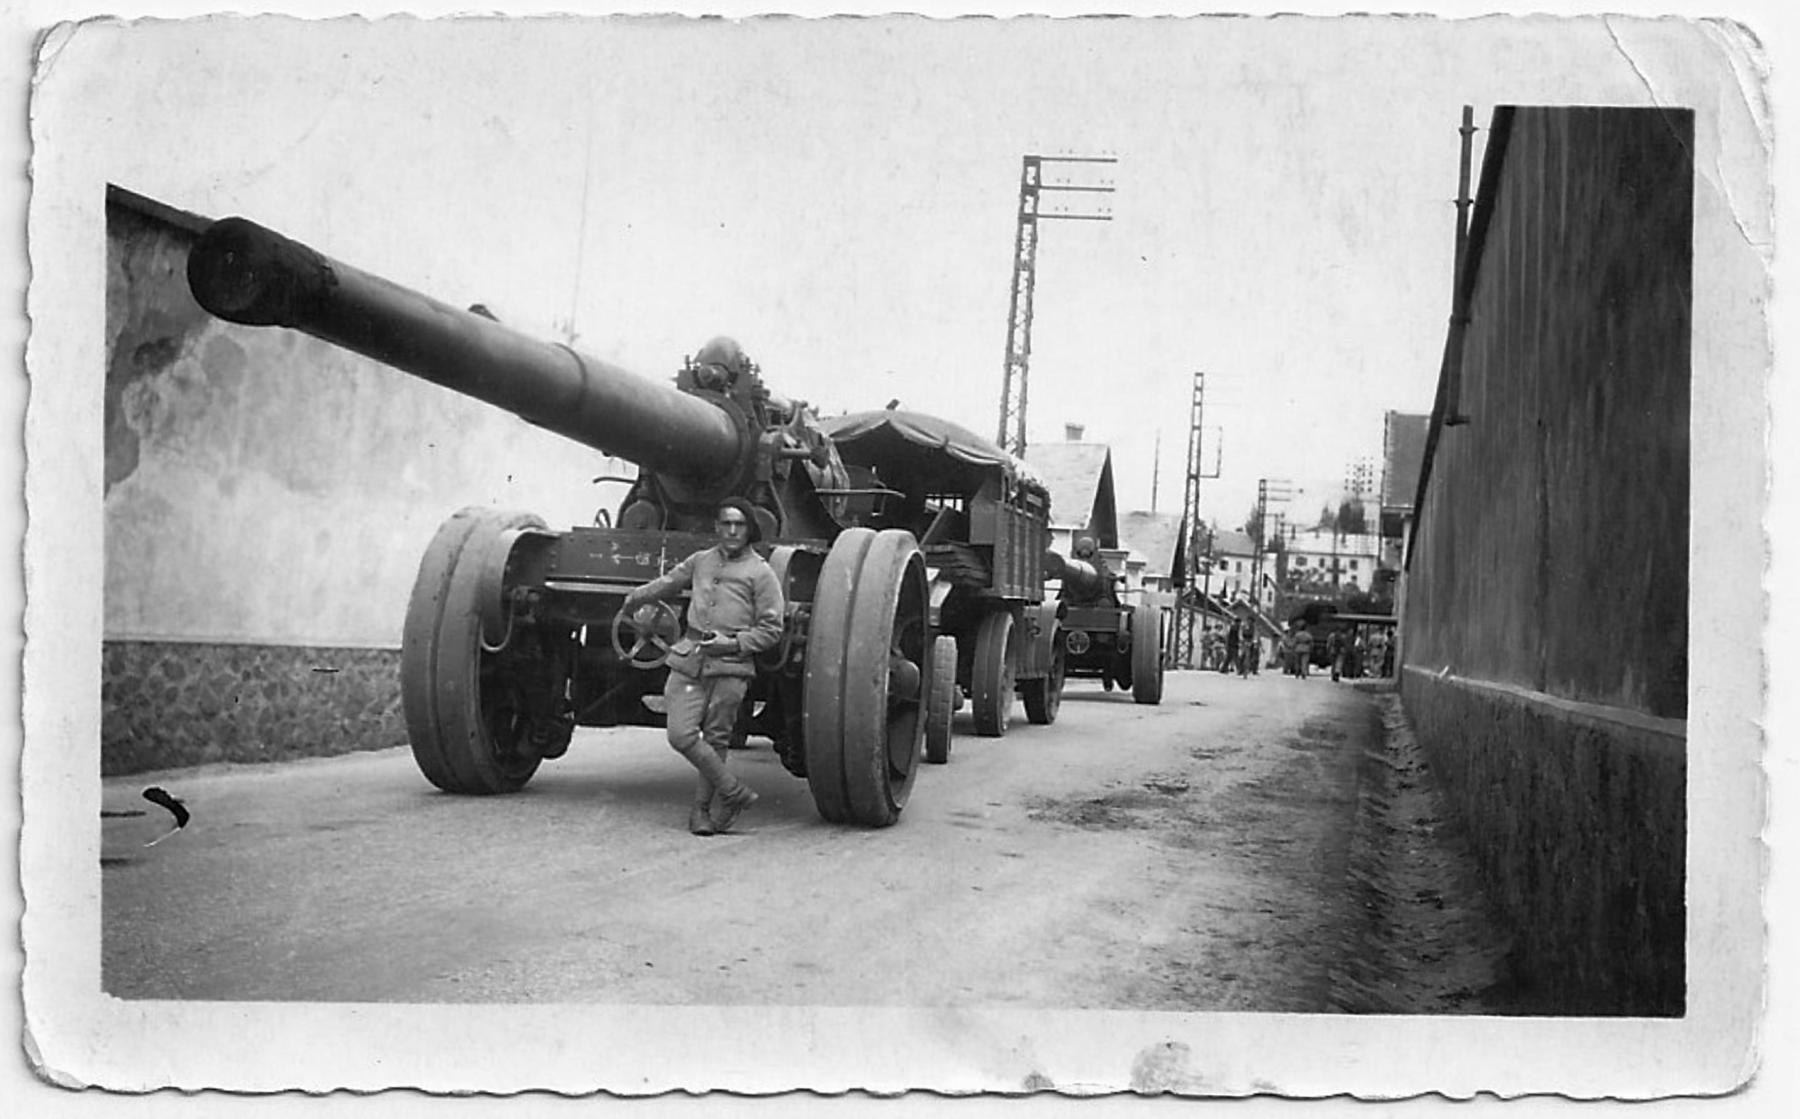 Ligne Maginot - 164° Régiment d'Artillerie de Position (164° RAP) - Briançon Sainte-Catherine
Canon de 145 L mle 1916